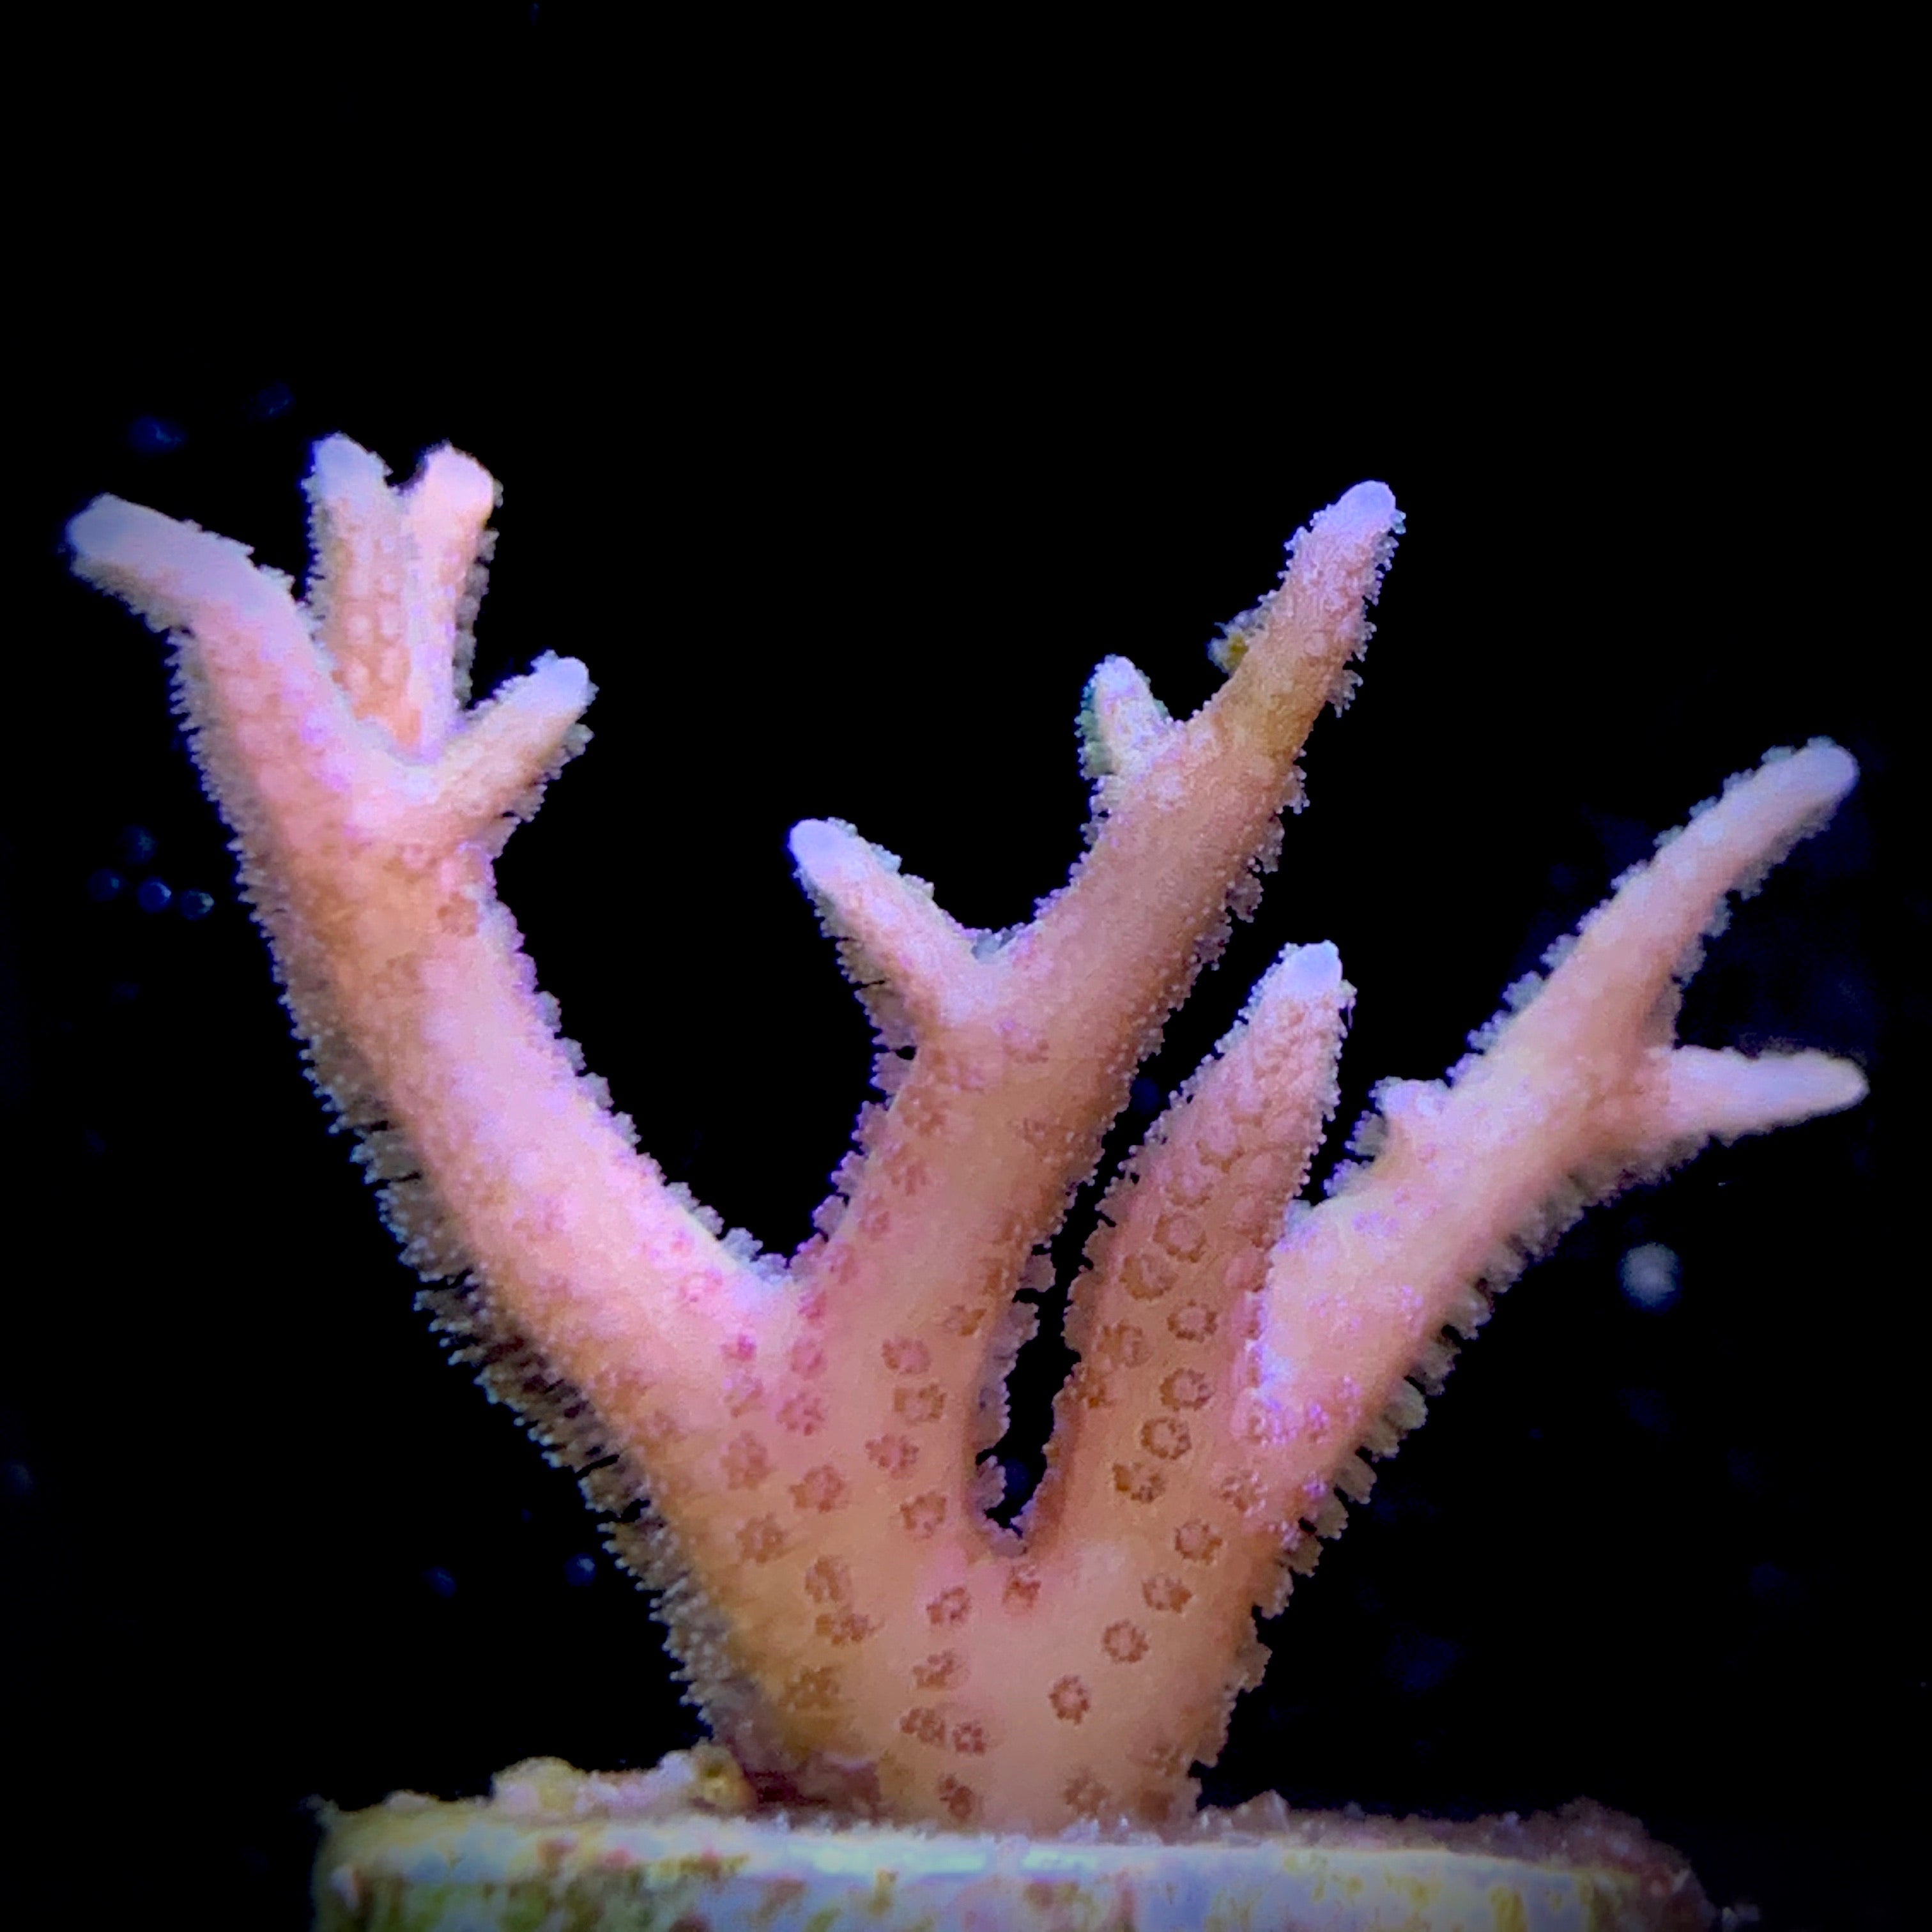 Pink Hystrix Seriatopora